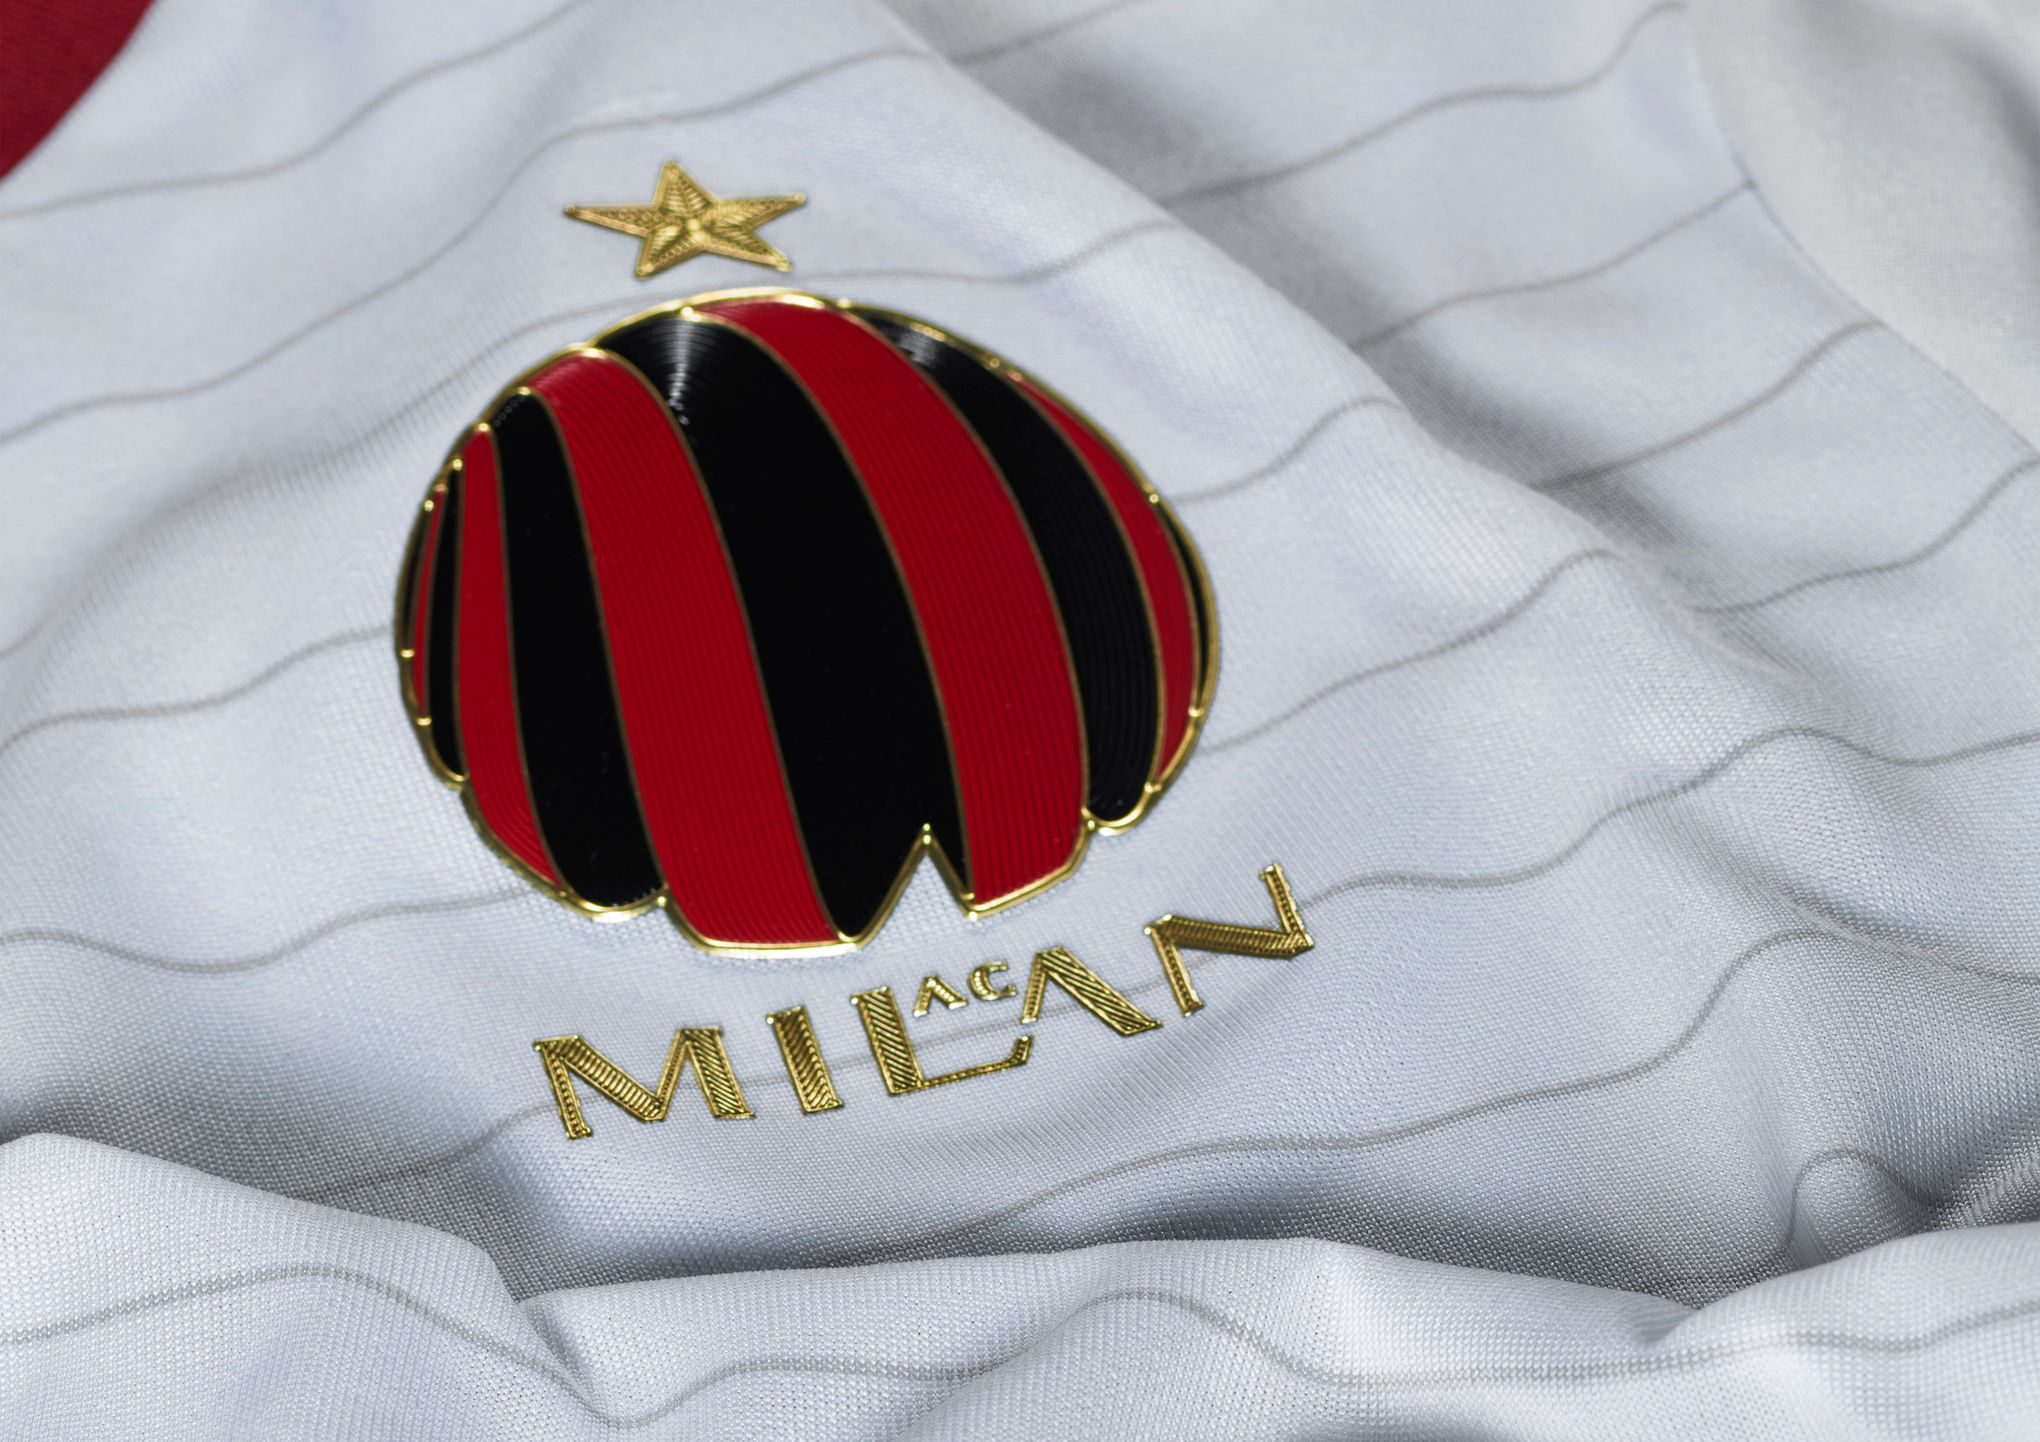 adidas AC Milan Men's Away Stadium Jersey 2014/15